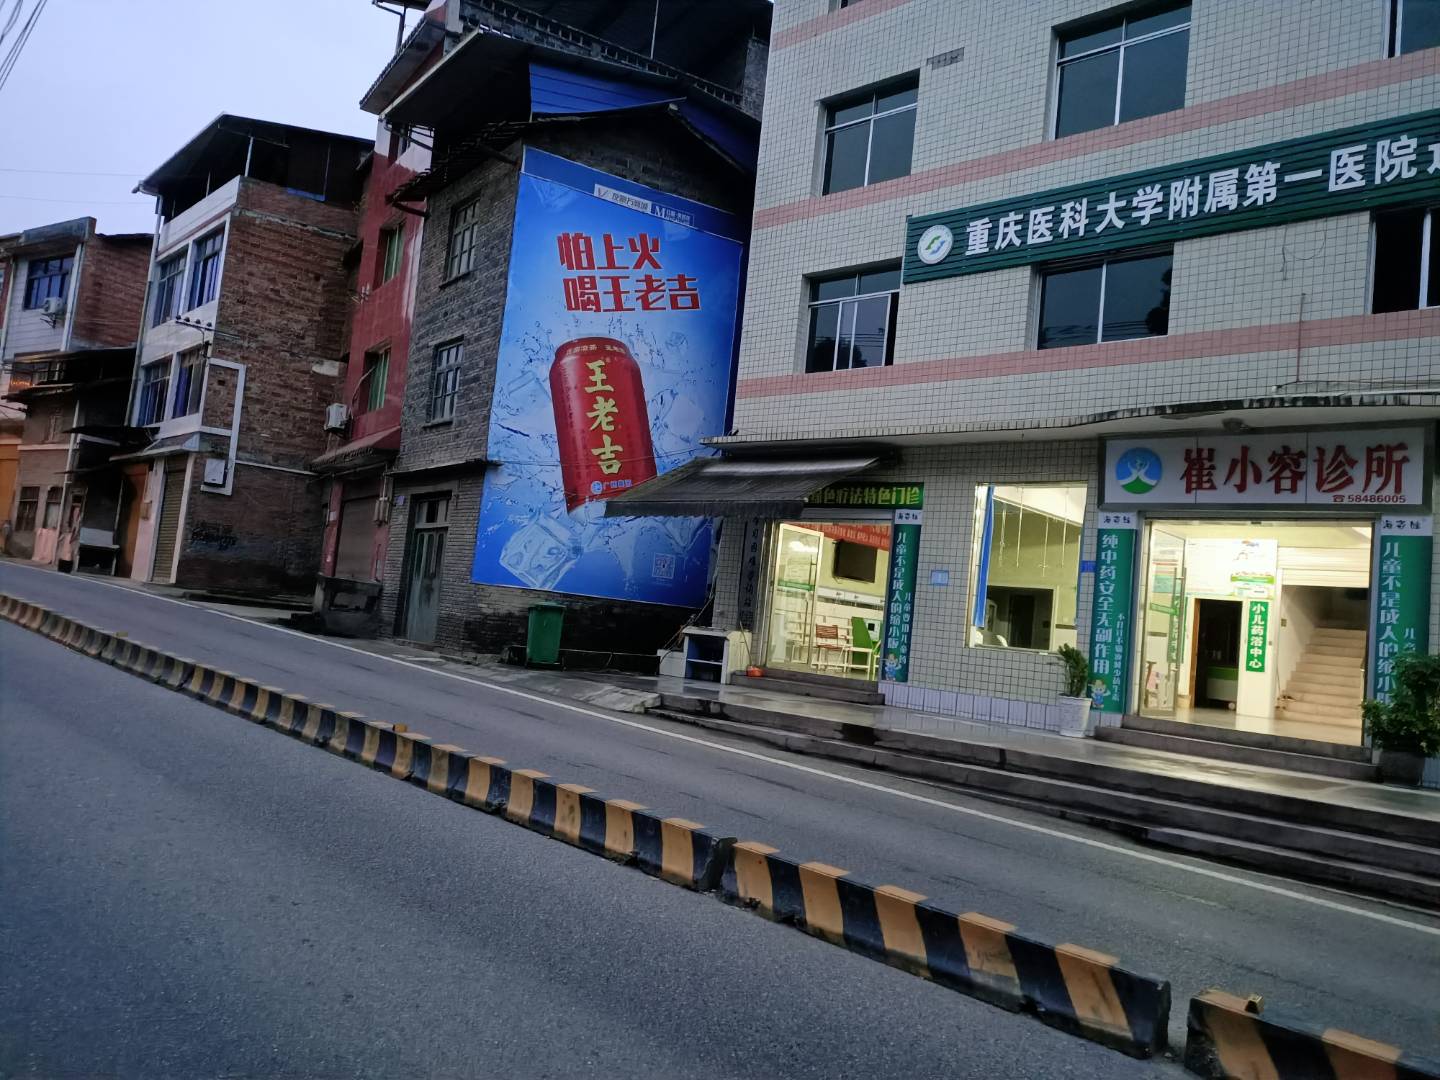 上海刷墙广告公司供应墙体广告刷墙广告墙绘广告标语广告写大字画车位